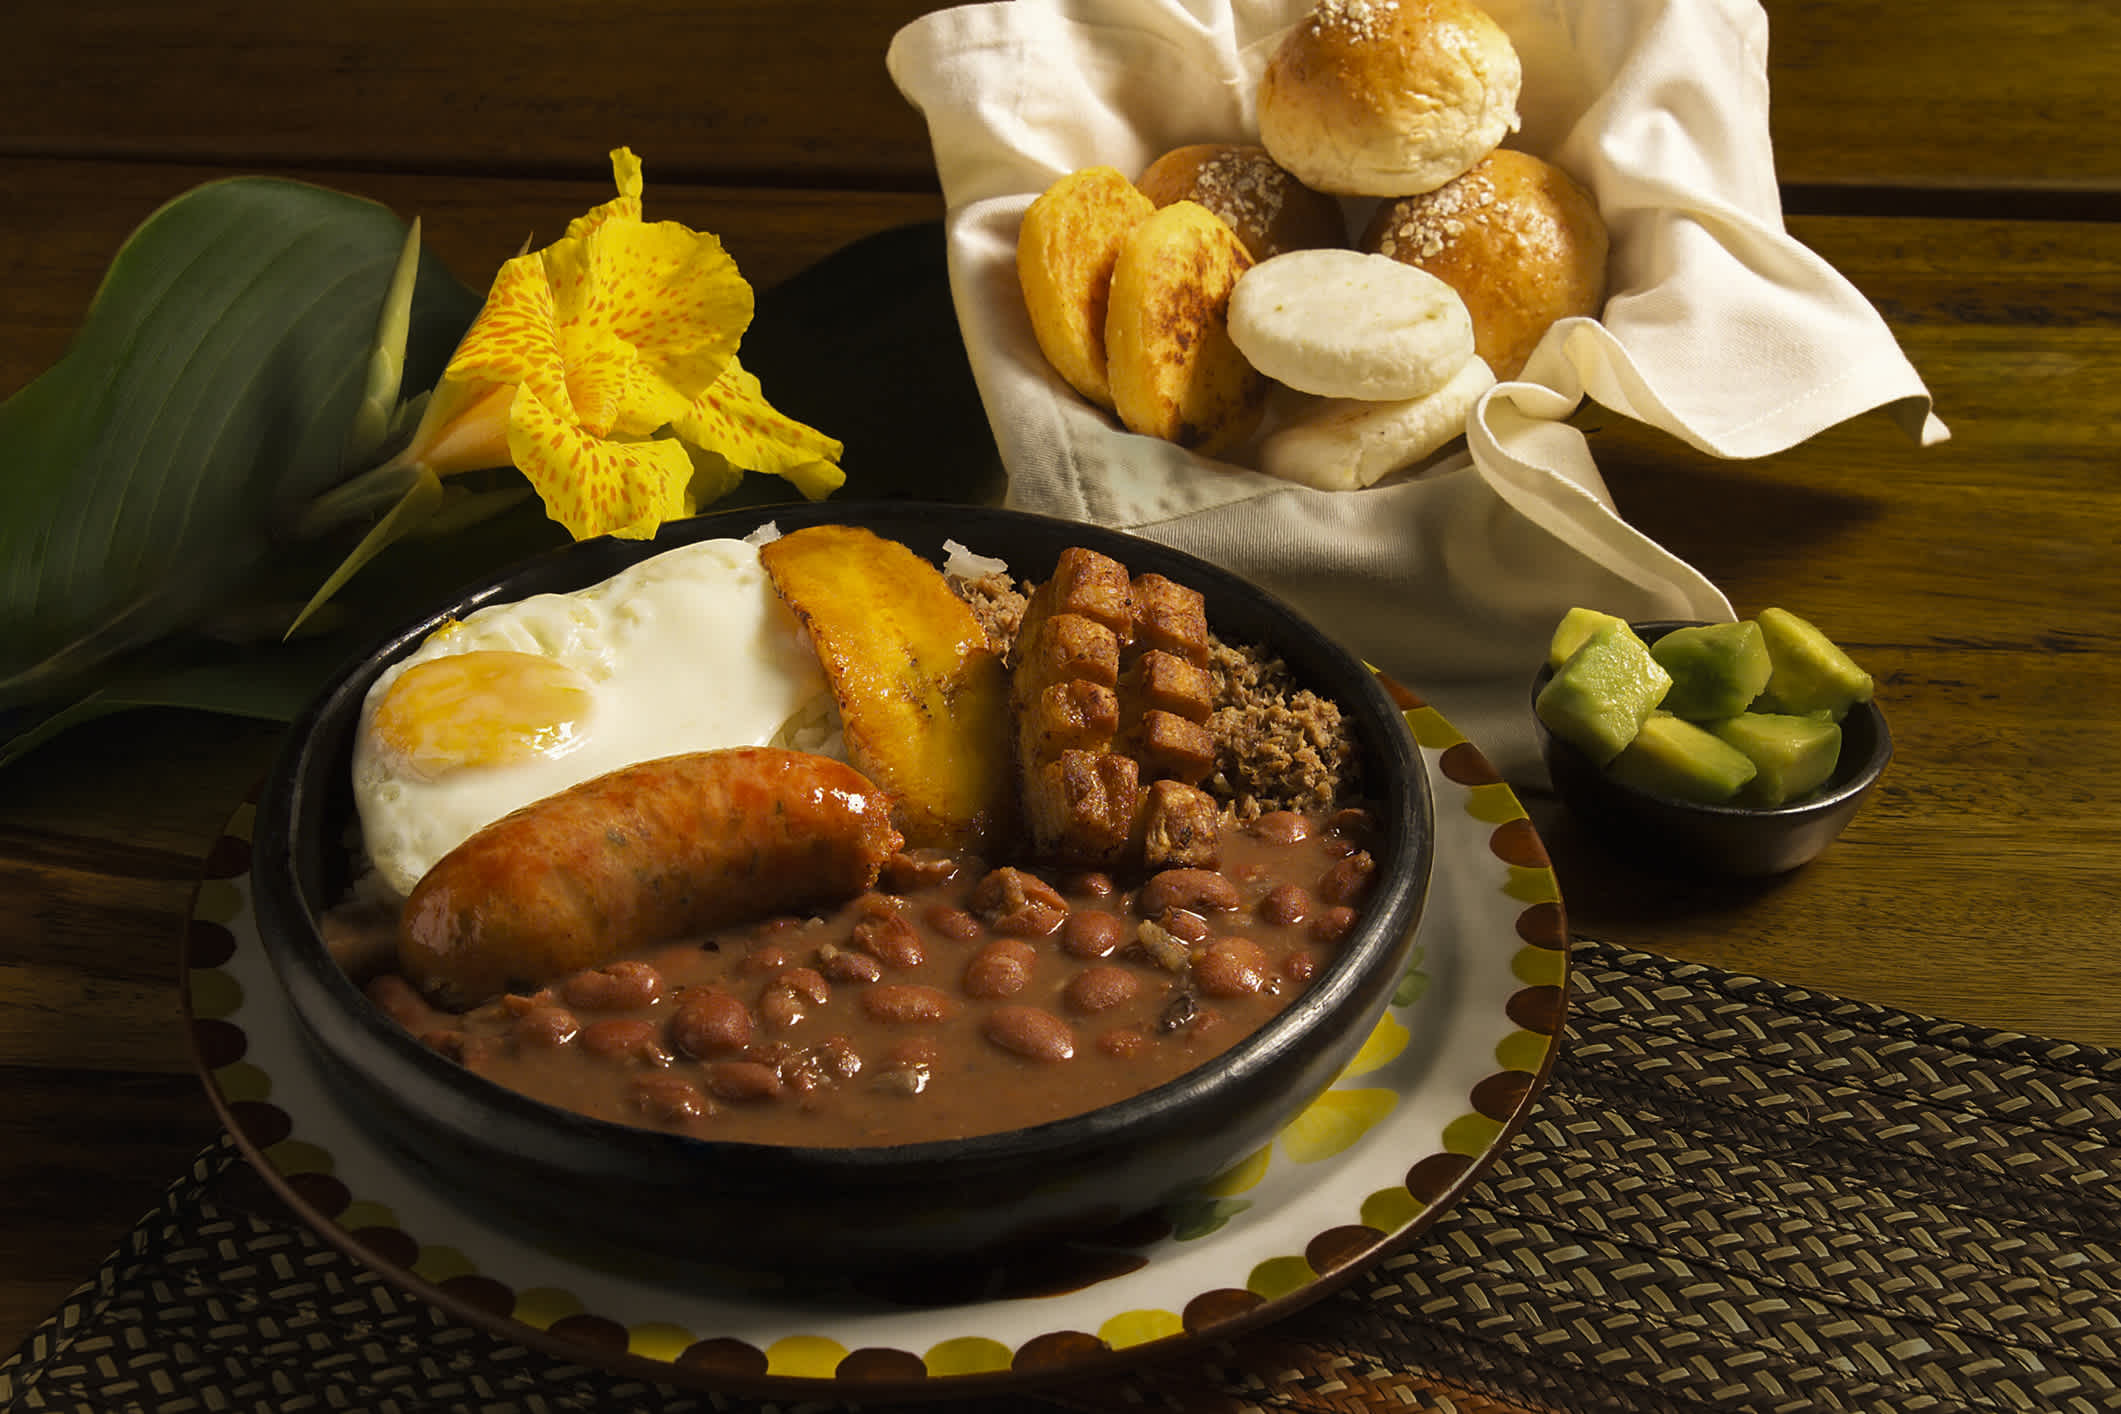 Bandeja Paisa, typisch kolumbianisches Essen.